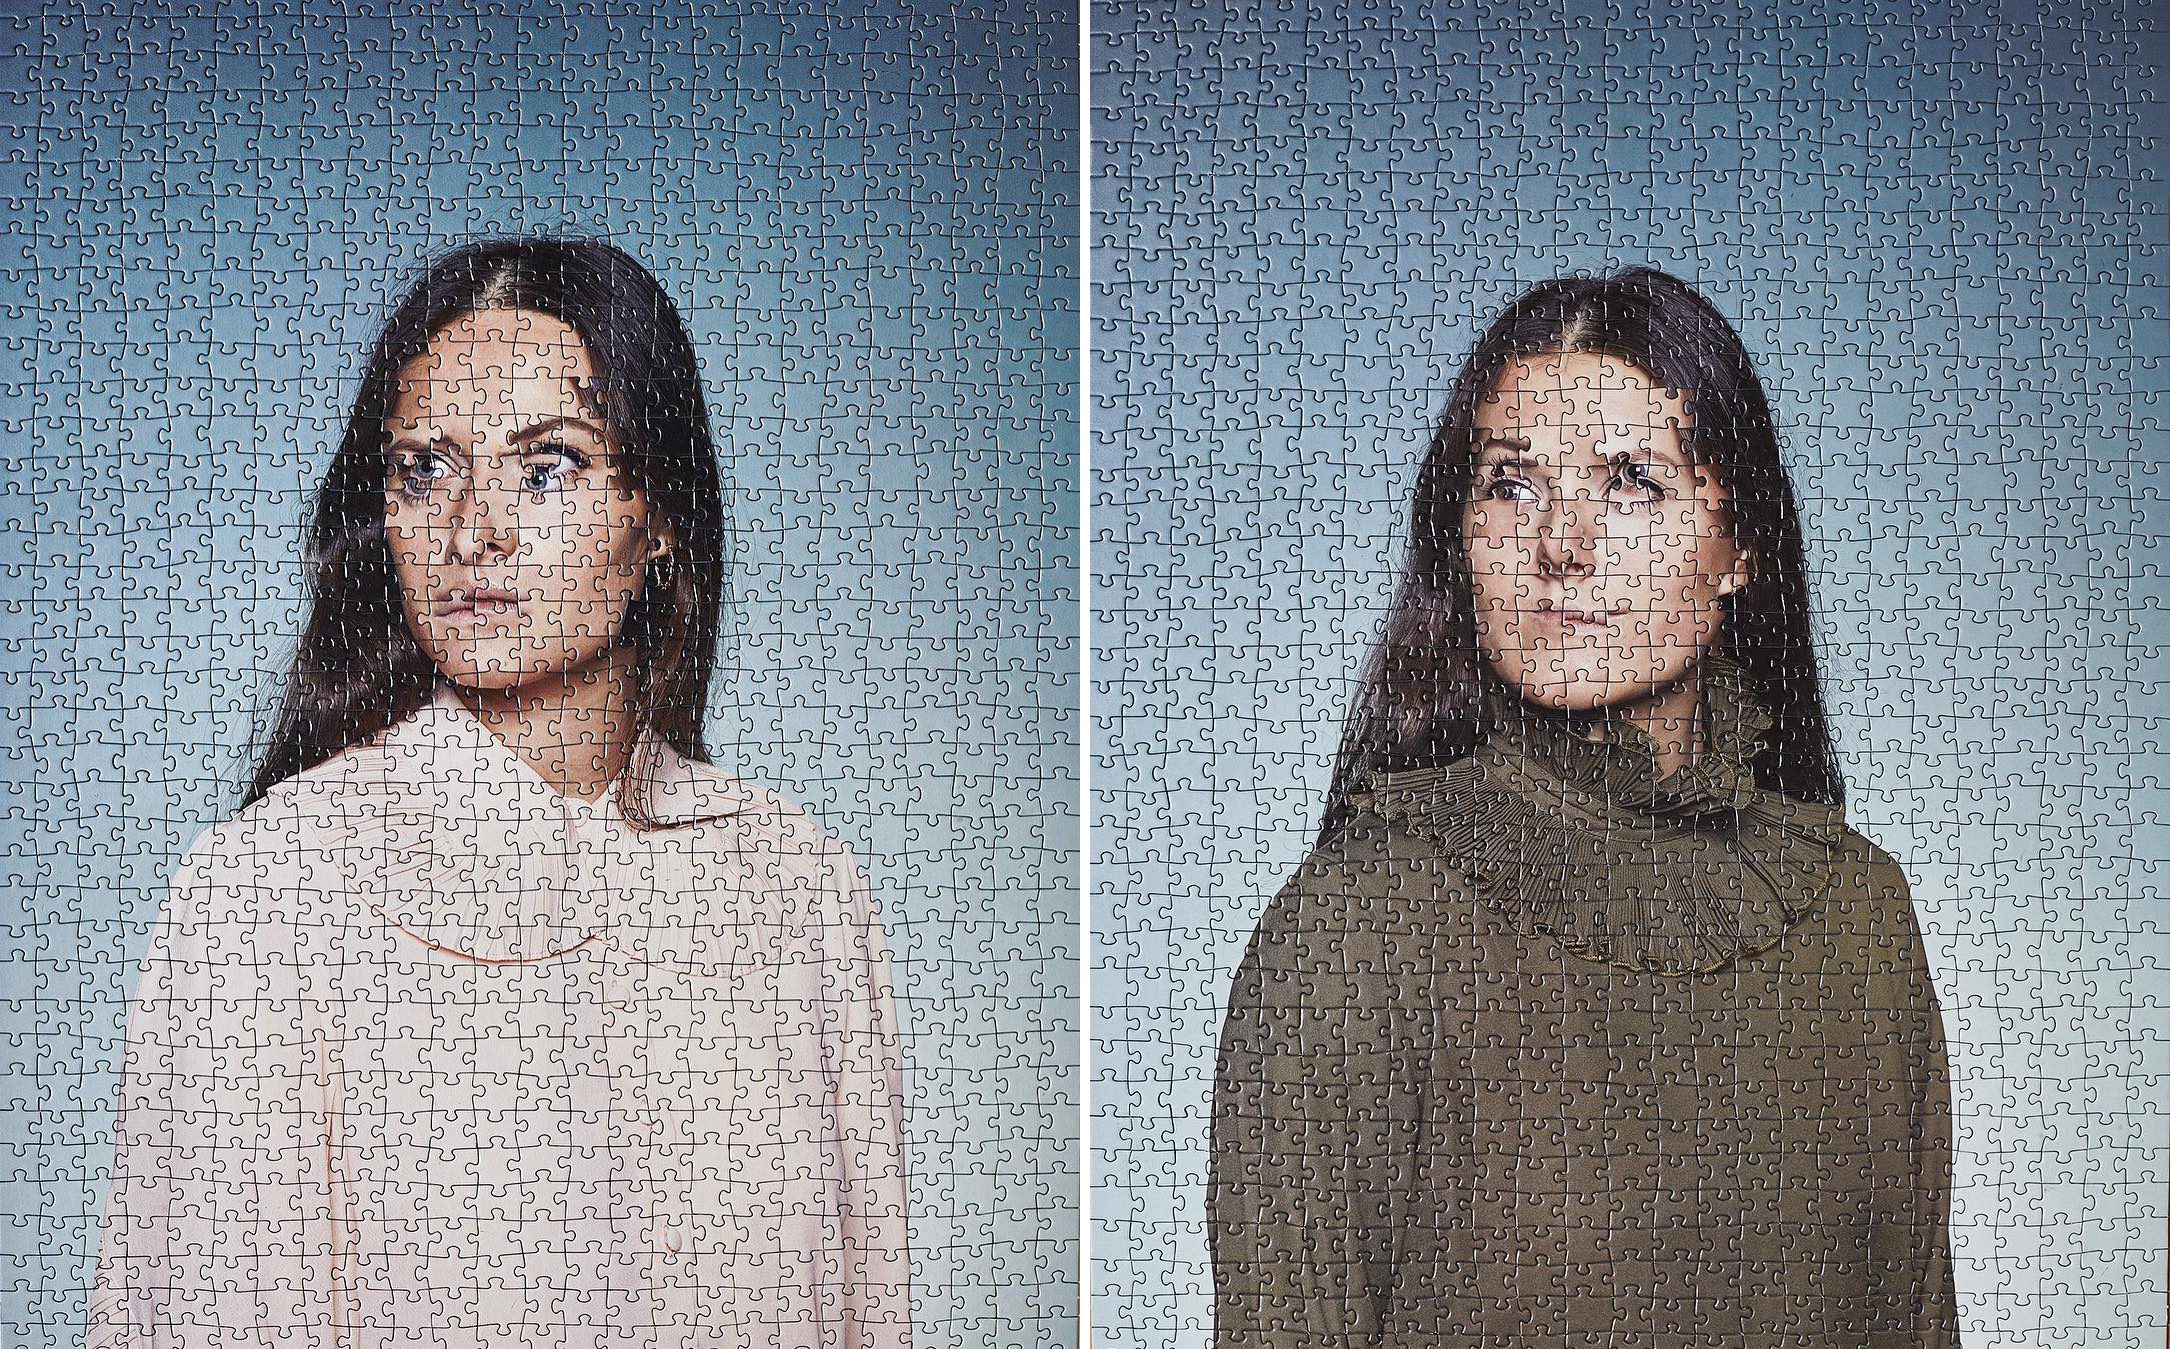 Alma Haser prend des portraits de jumeaux et mélange les photos comme un puzzle